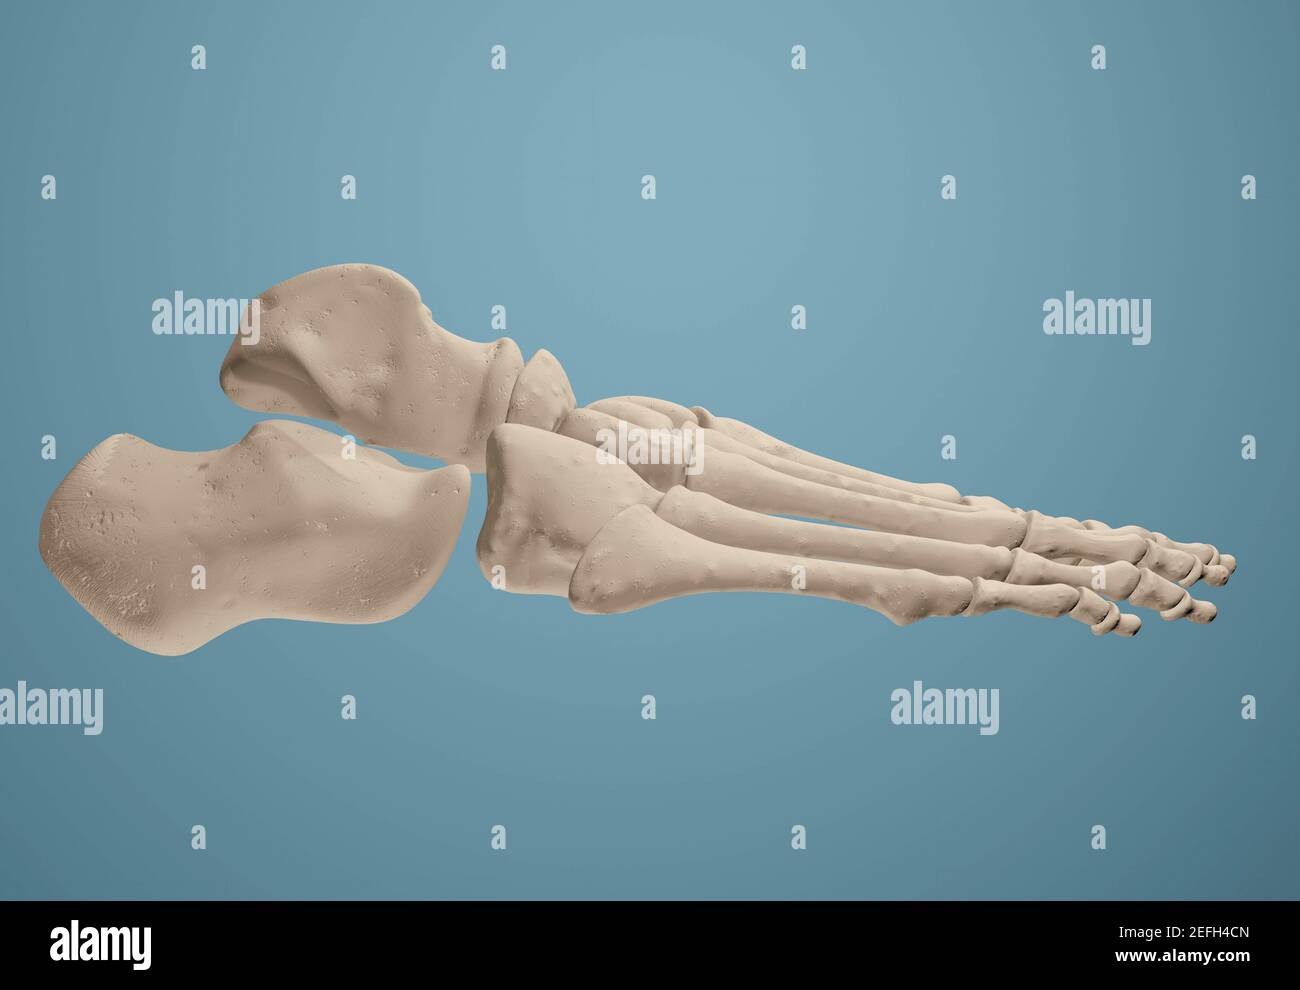 3D render showing bones of the foot. Stock Photo